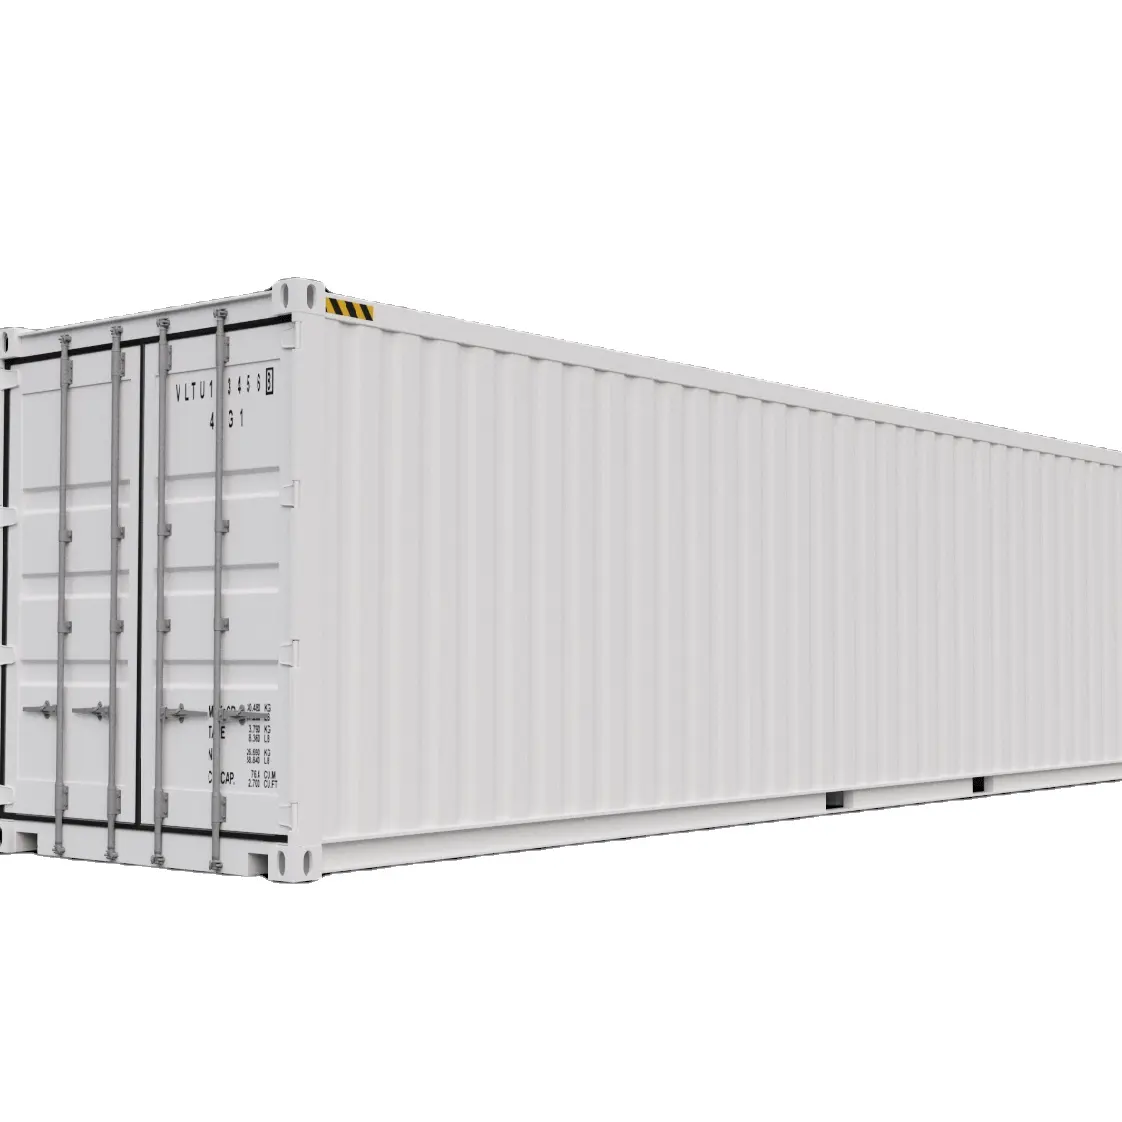 حاويات ISO 40ft & 20 ft مستعملة وجديدة متاحة في مخزونات كبيرة